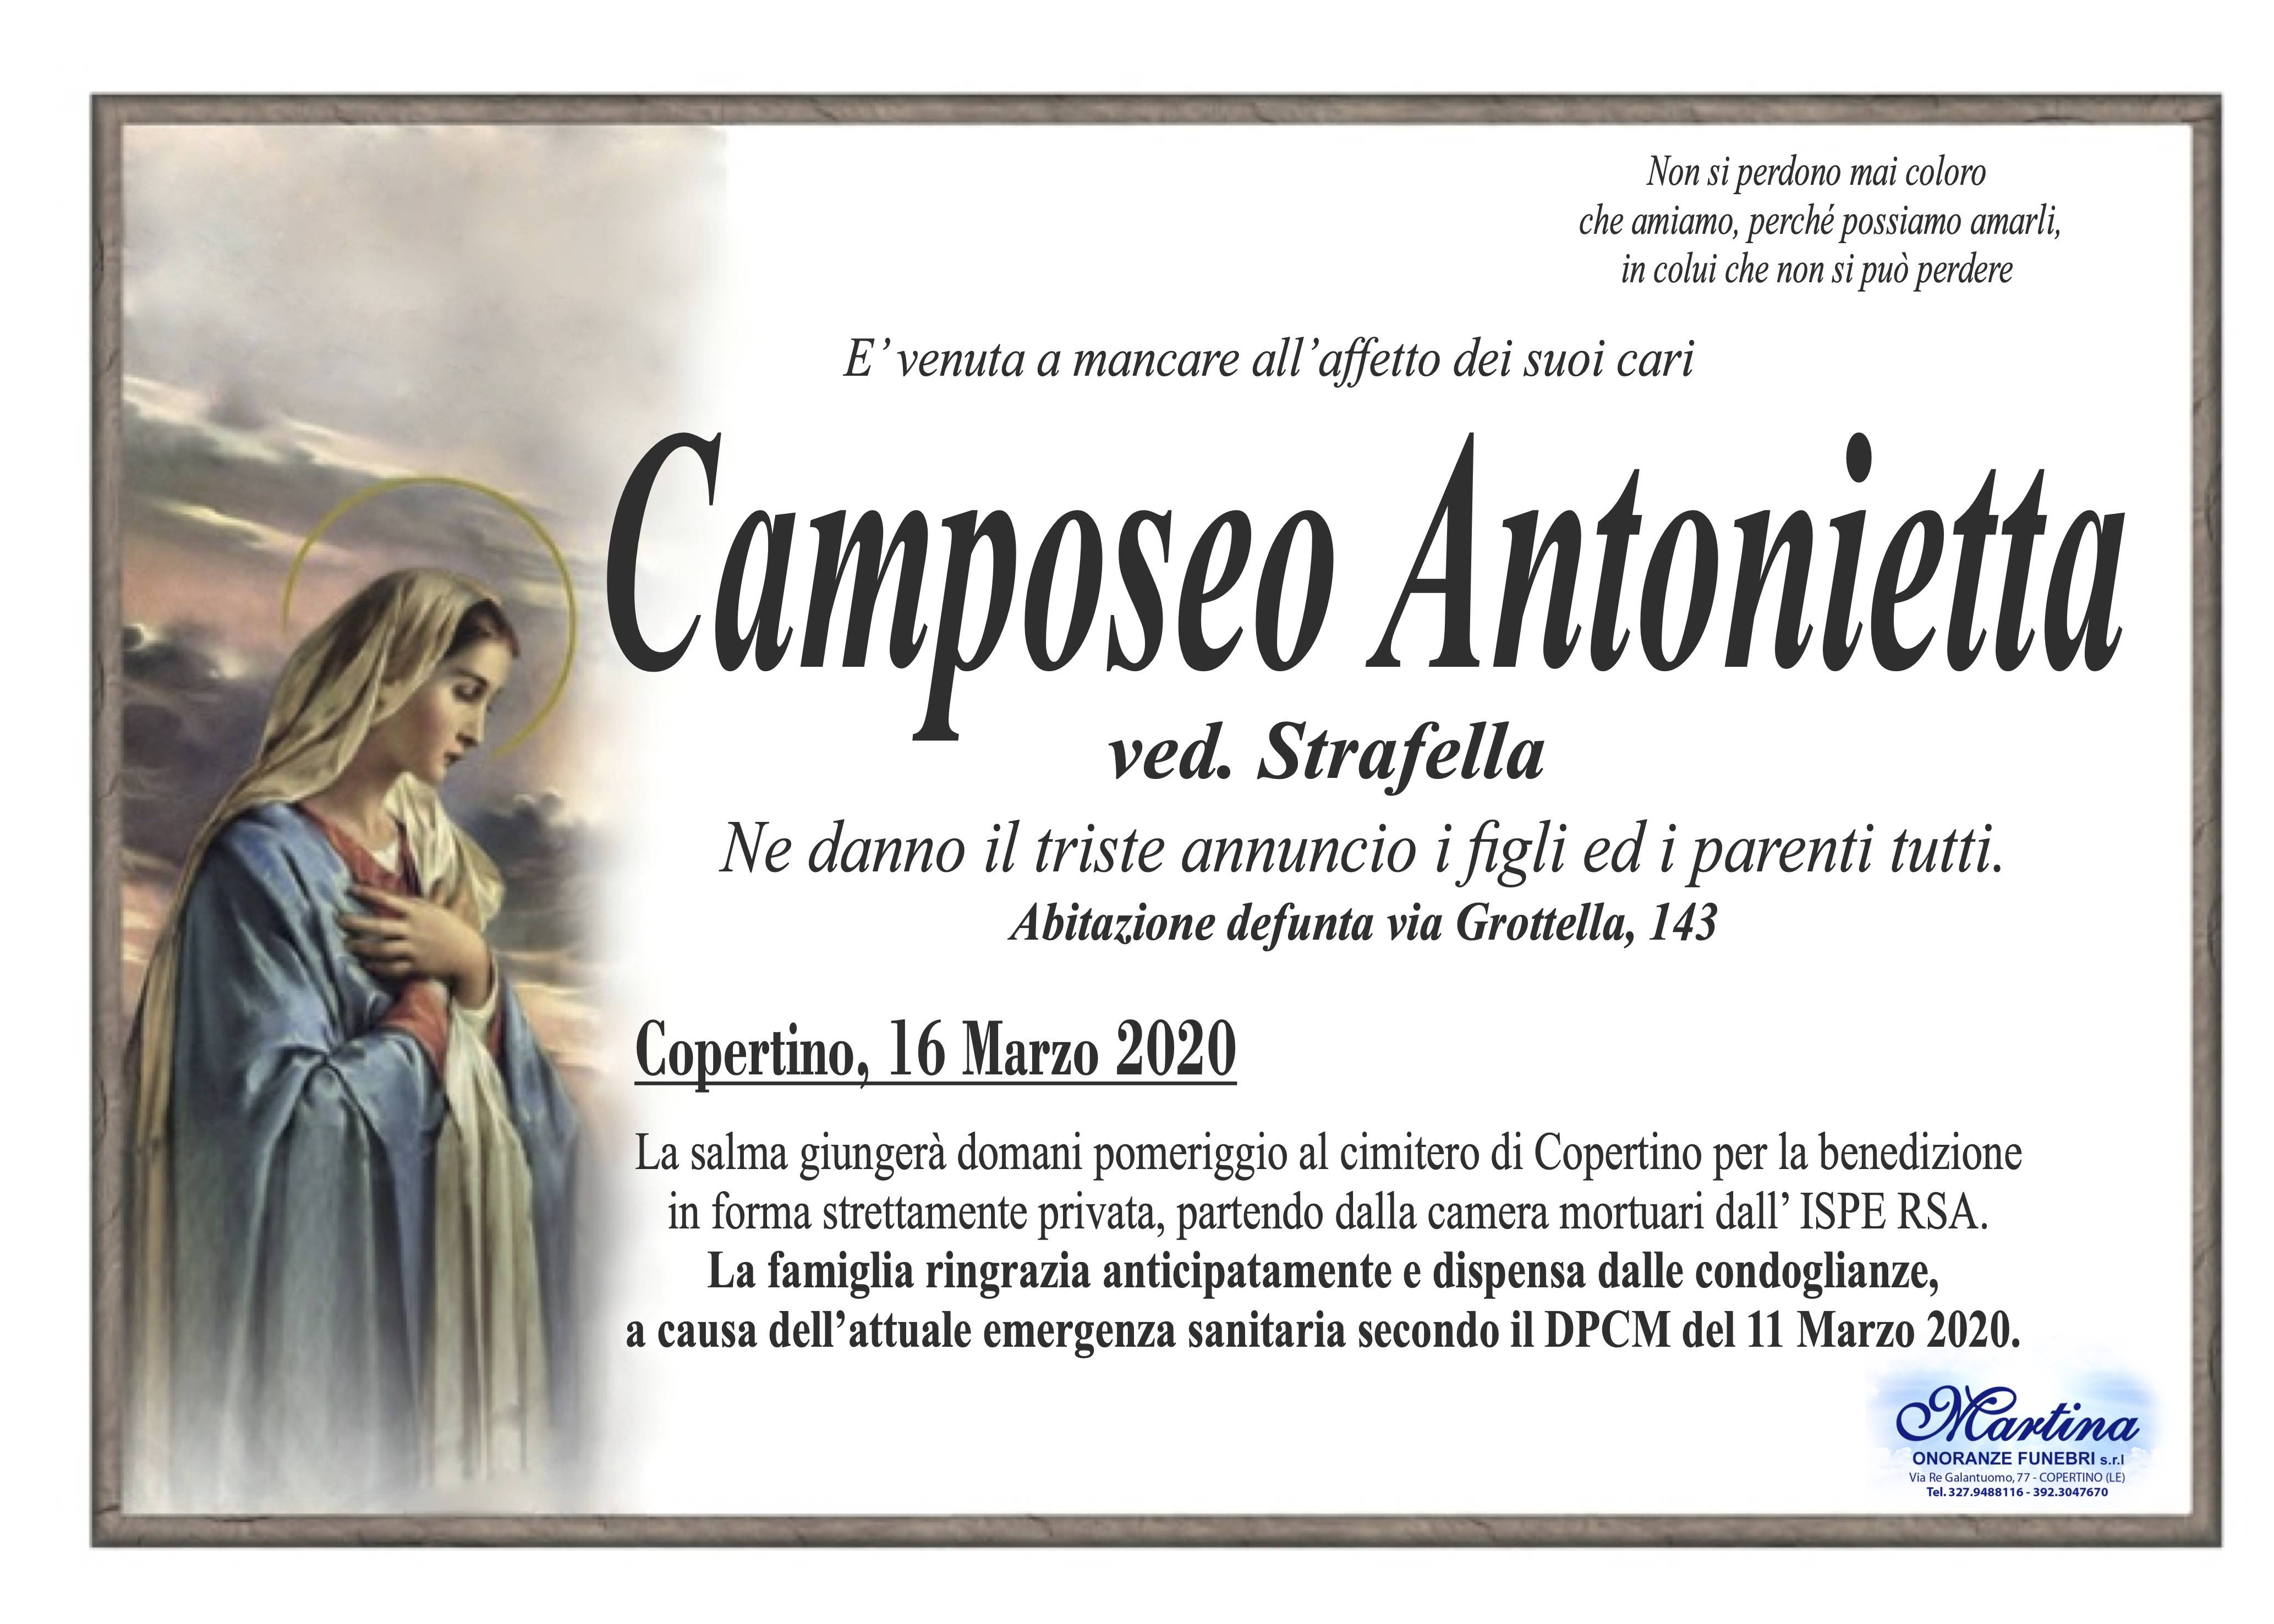 Antonietta Camposeo